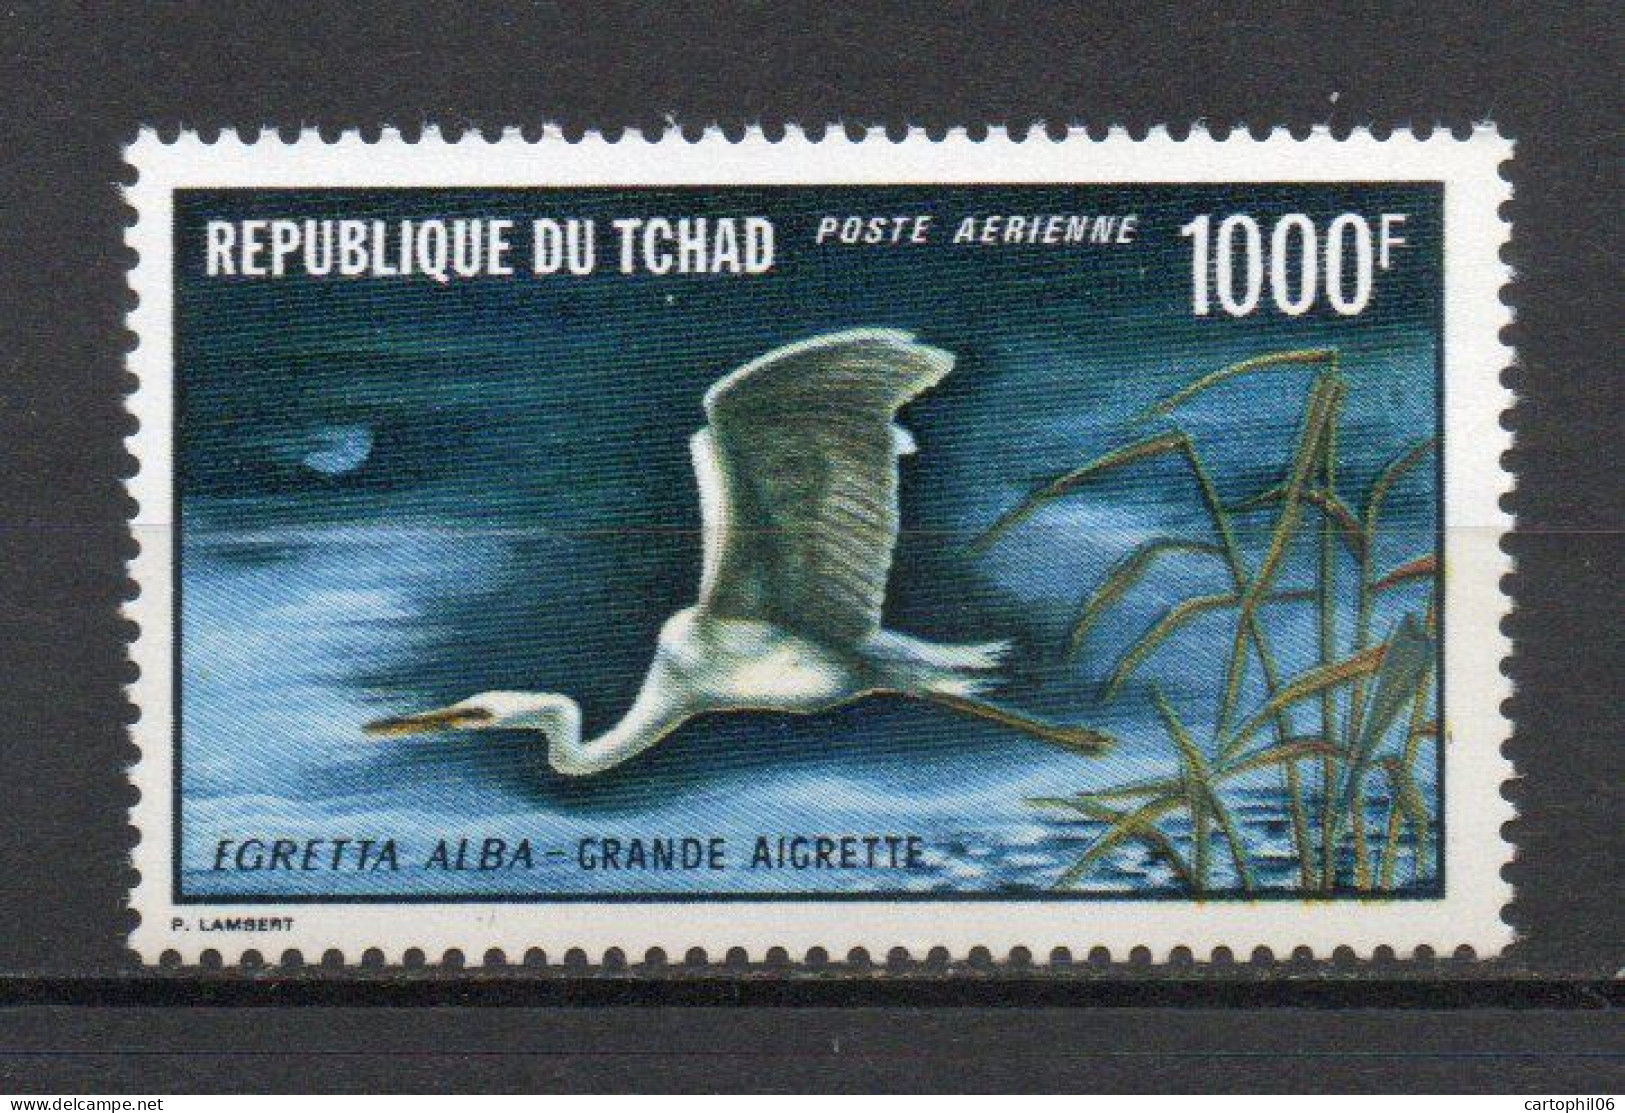 - TCHAD / OISEAUX Poste Aérienne N° 88 Neuf ** MNH - 1000 F. Grande Aigrette 1971 - Cote 60,00 € - - Cigognes & échassiers